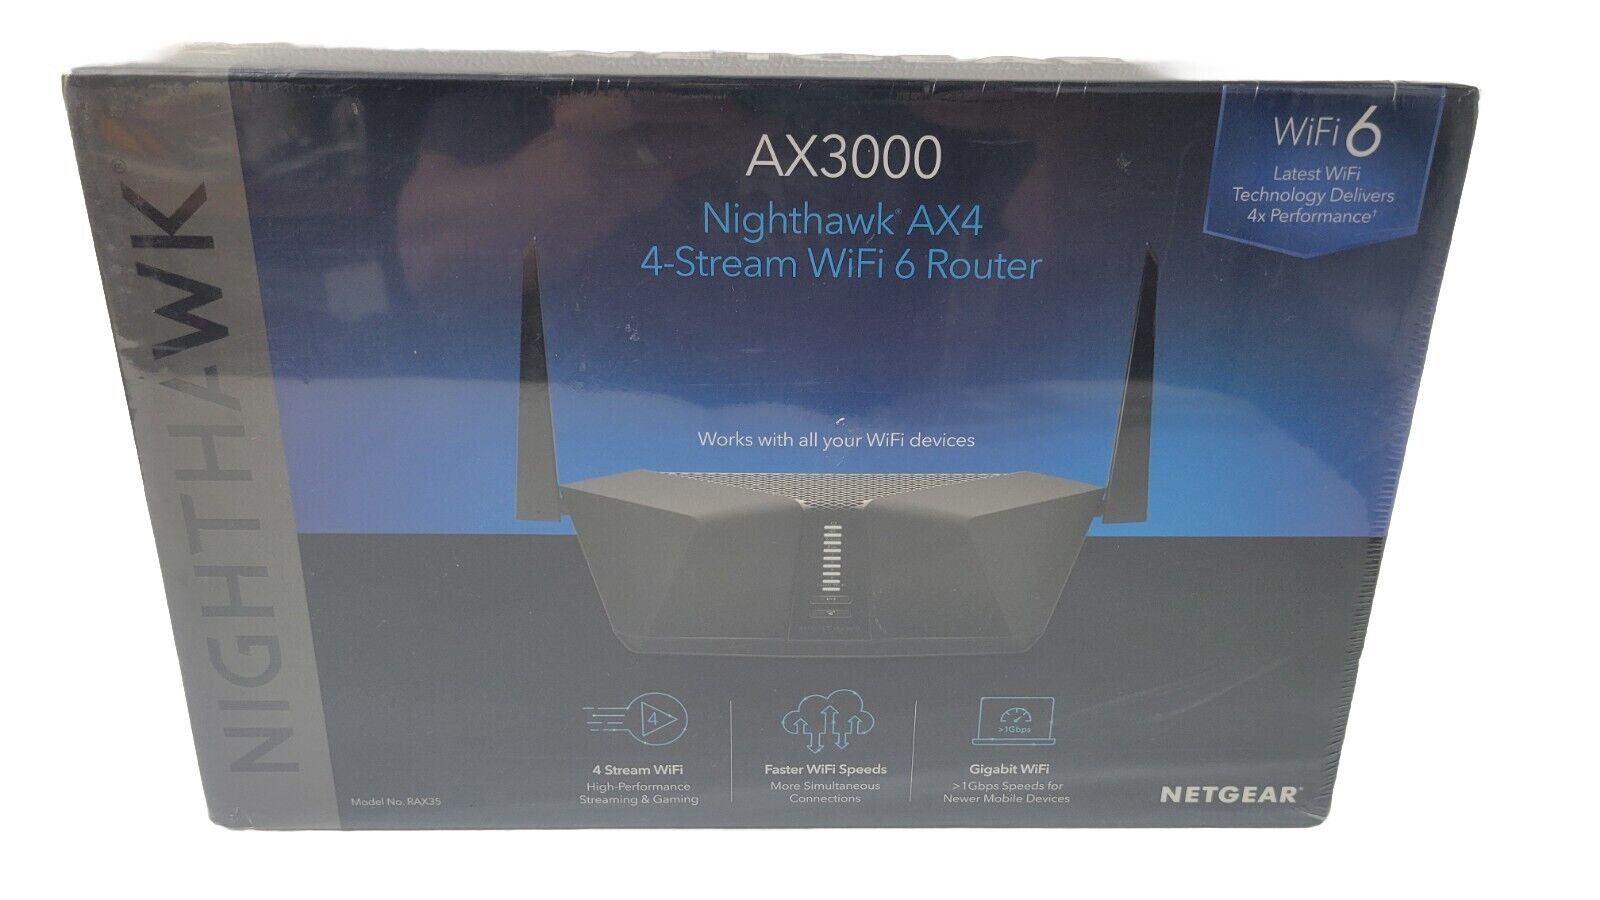 NEW Netgear Nighthawk AX4 4-Stream WiFi 6 Router AX3000 RAX35v2 